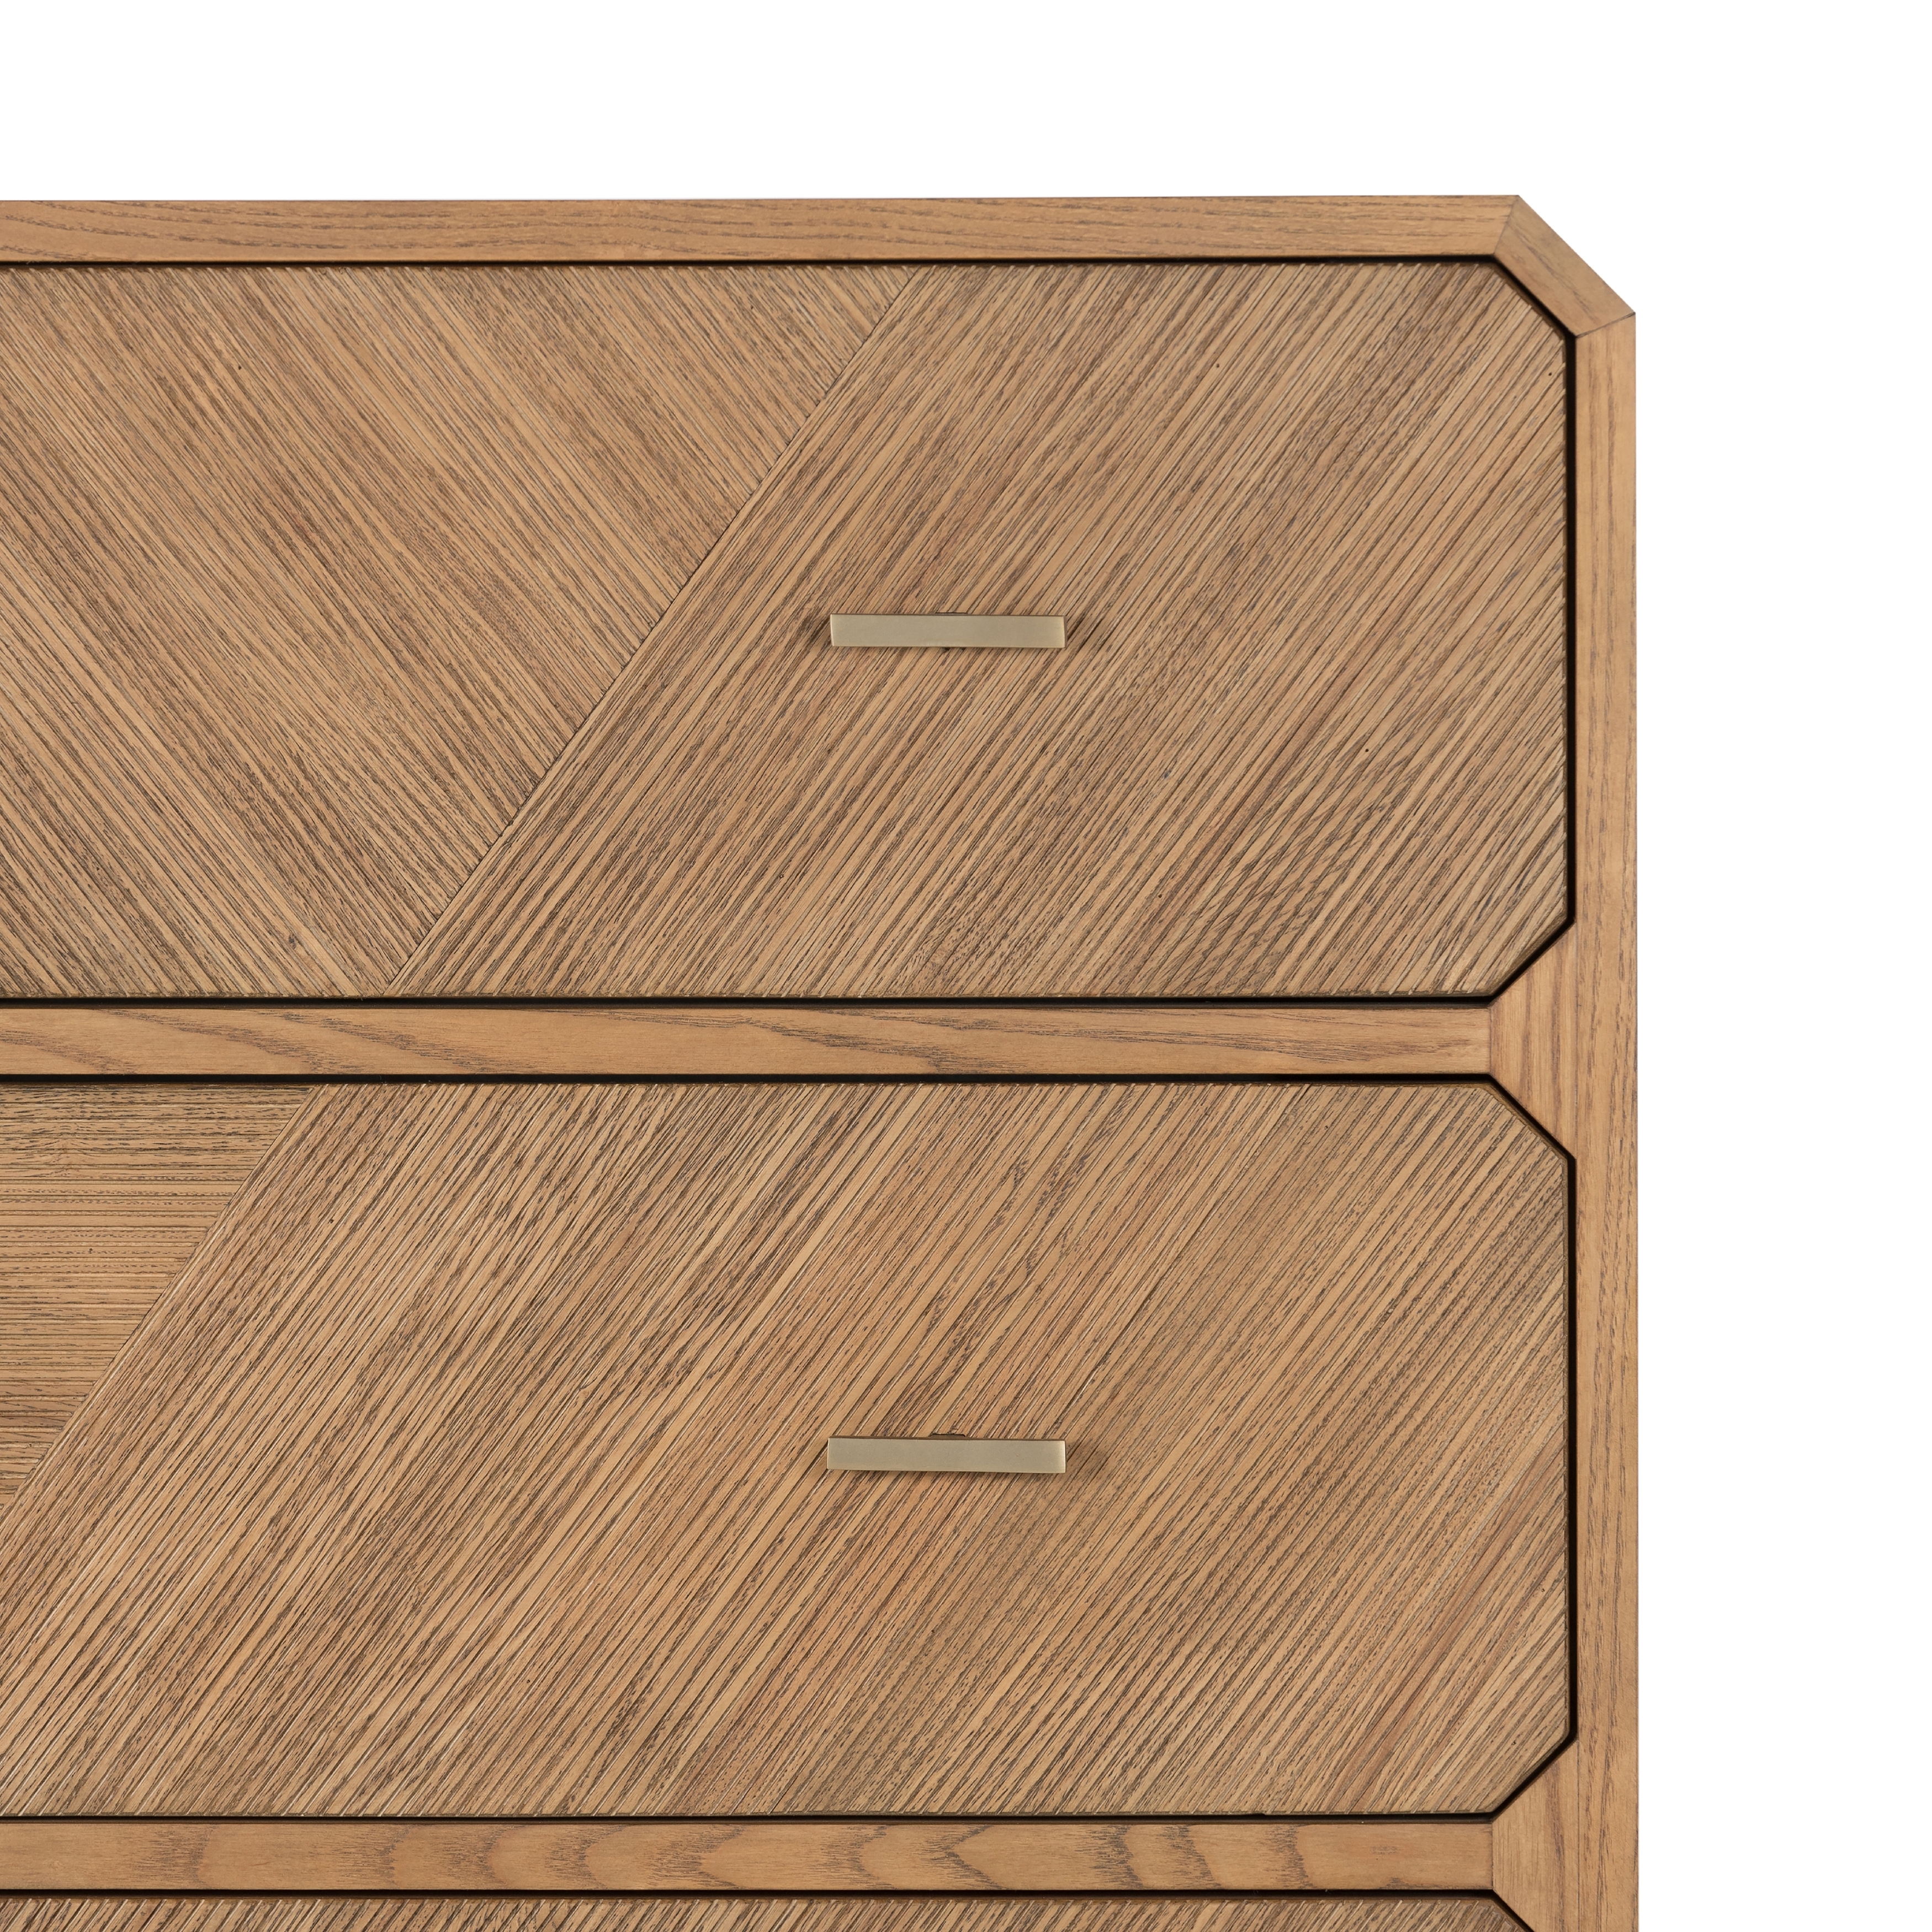 Caspian 4 Drawer Dresser - Natural Ash Veneer - Image 2